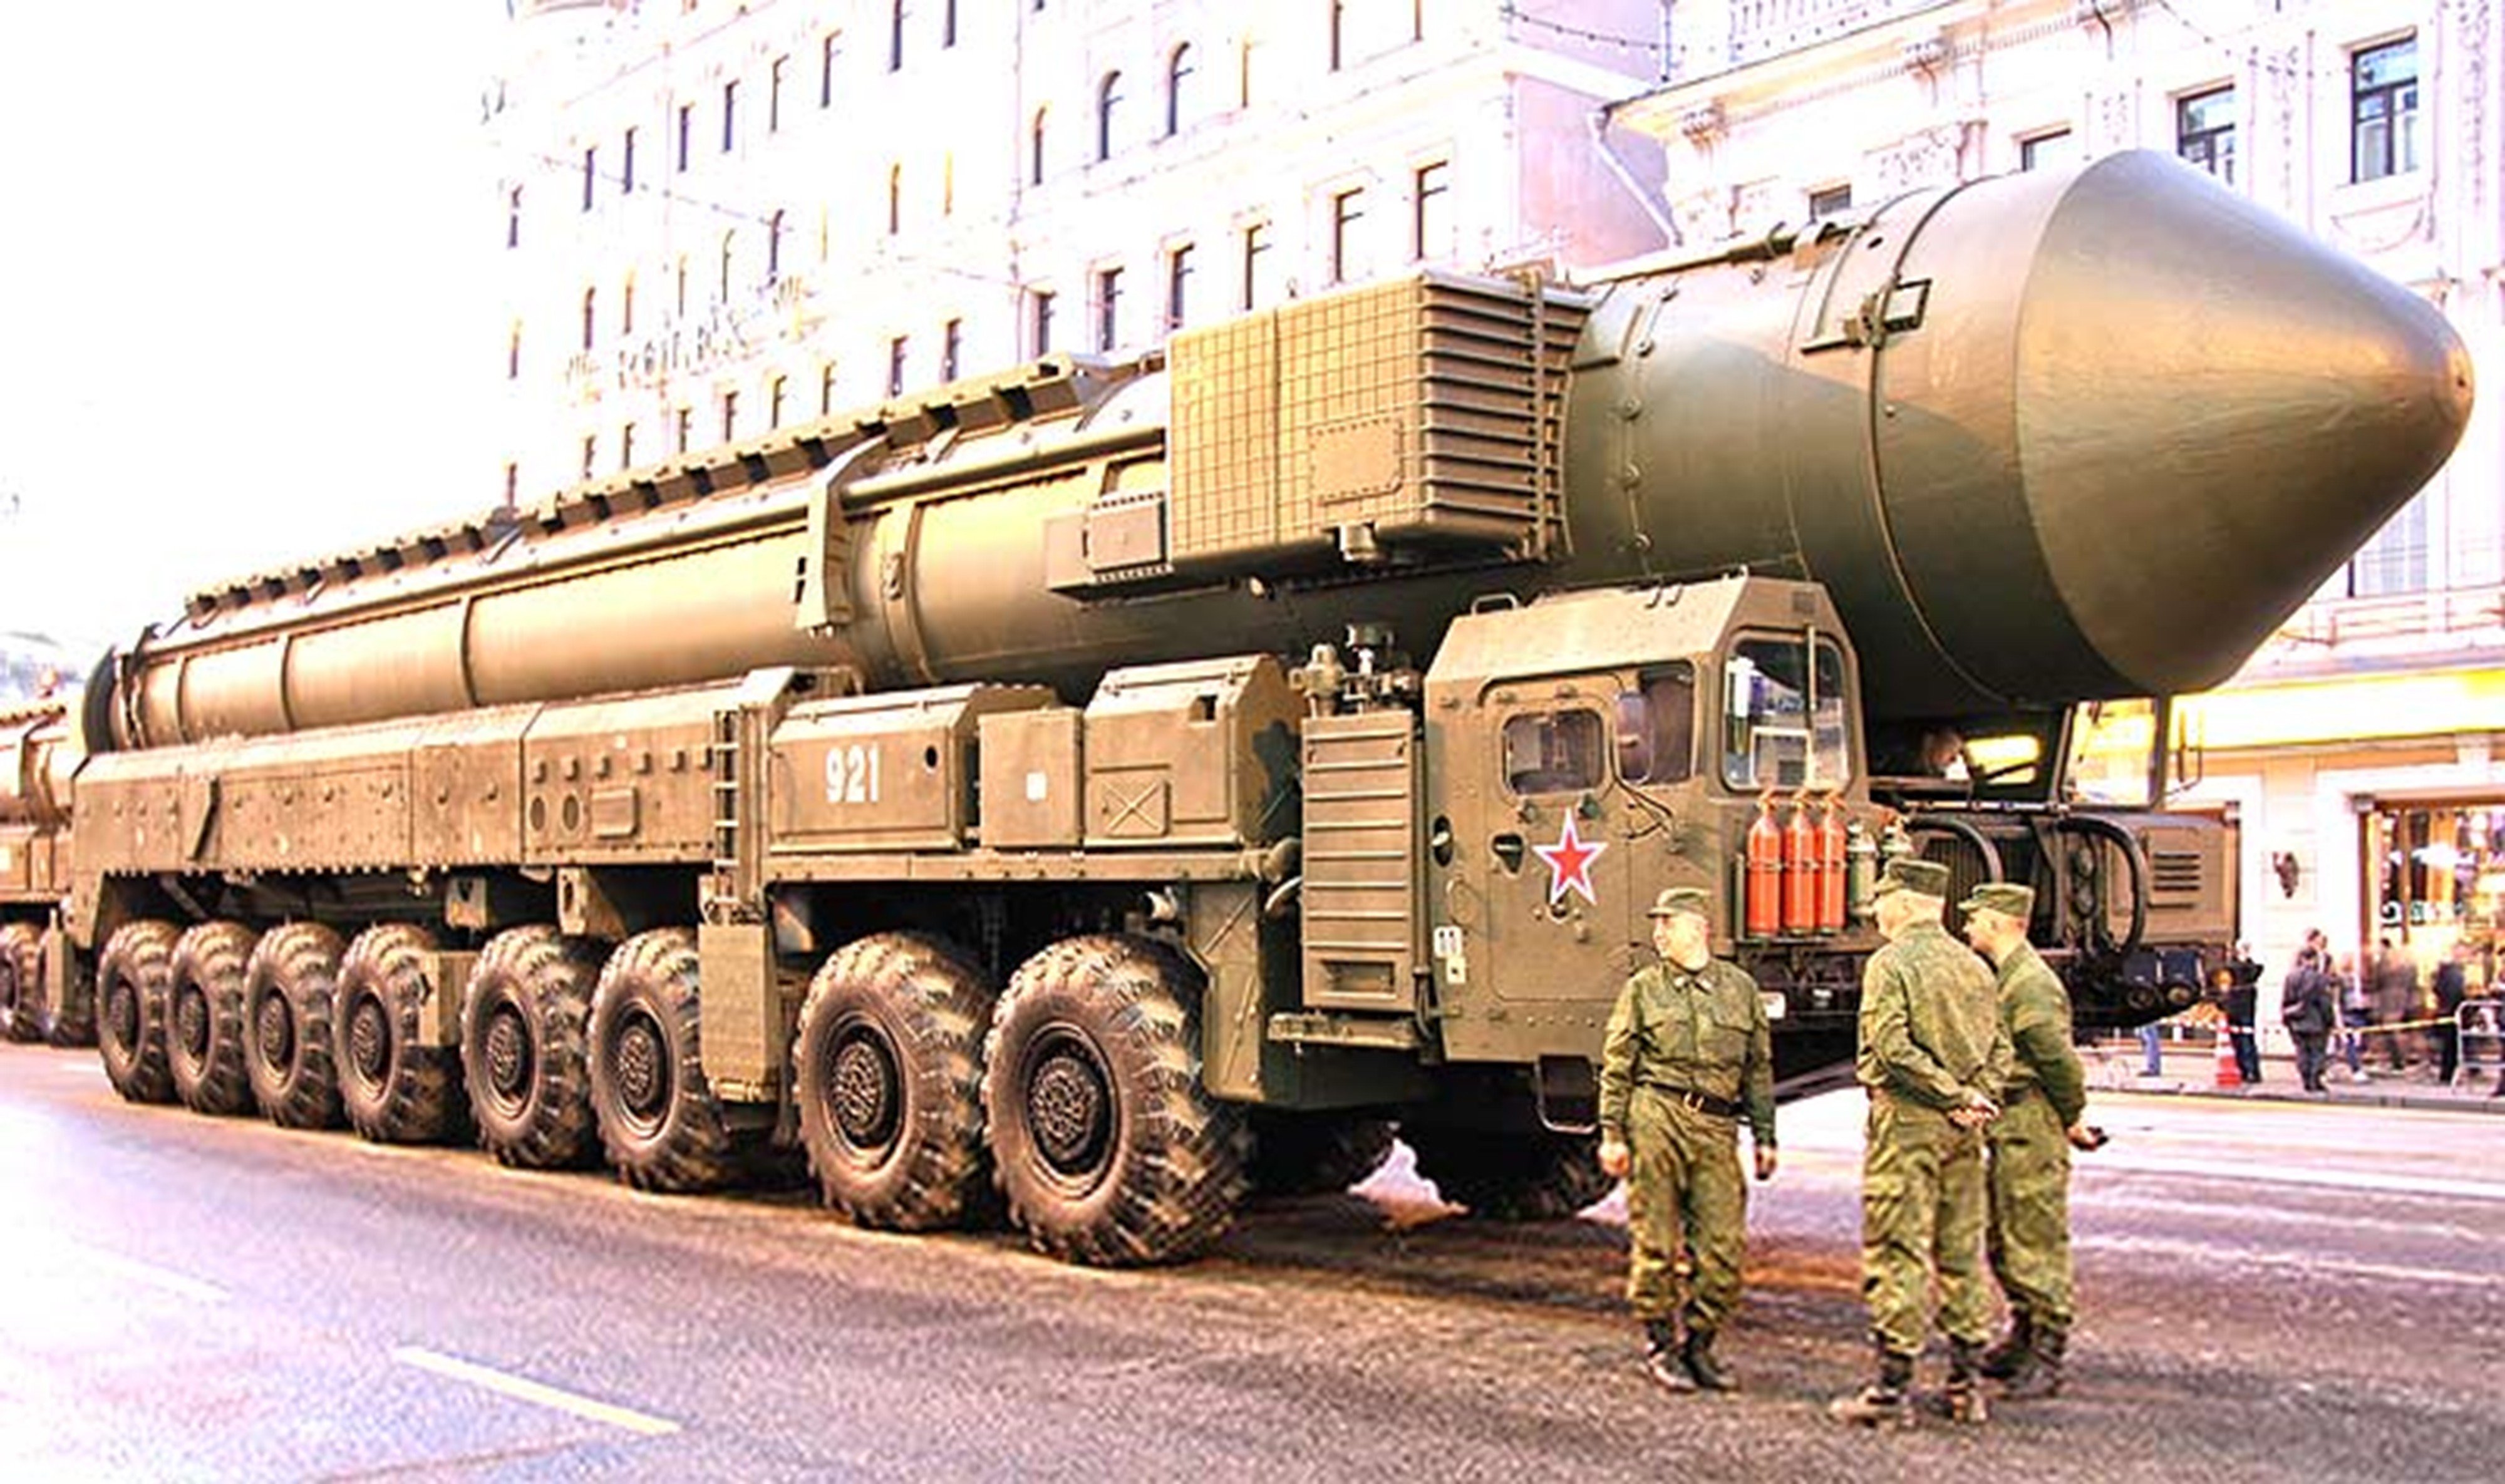 Сильнейшее оружие россии. РТ-2пм2 «Тополь-м». РТ-2пм «Тополь» (SS-25);. РТ-2пм2 «Тополь-м» (SS-27). Ядерная ракета РС-24 «Ярс».